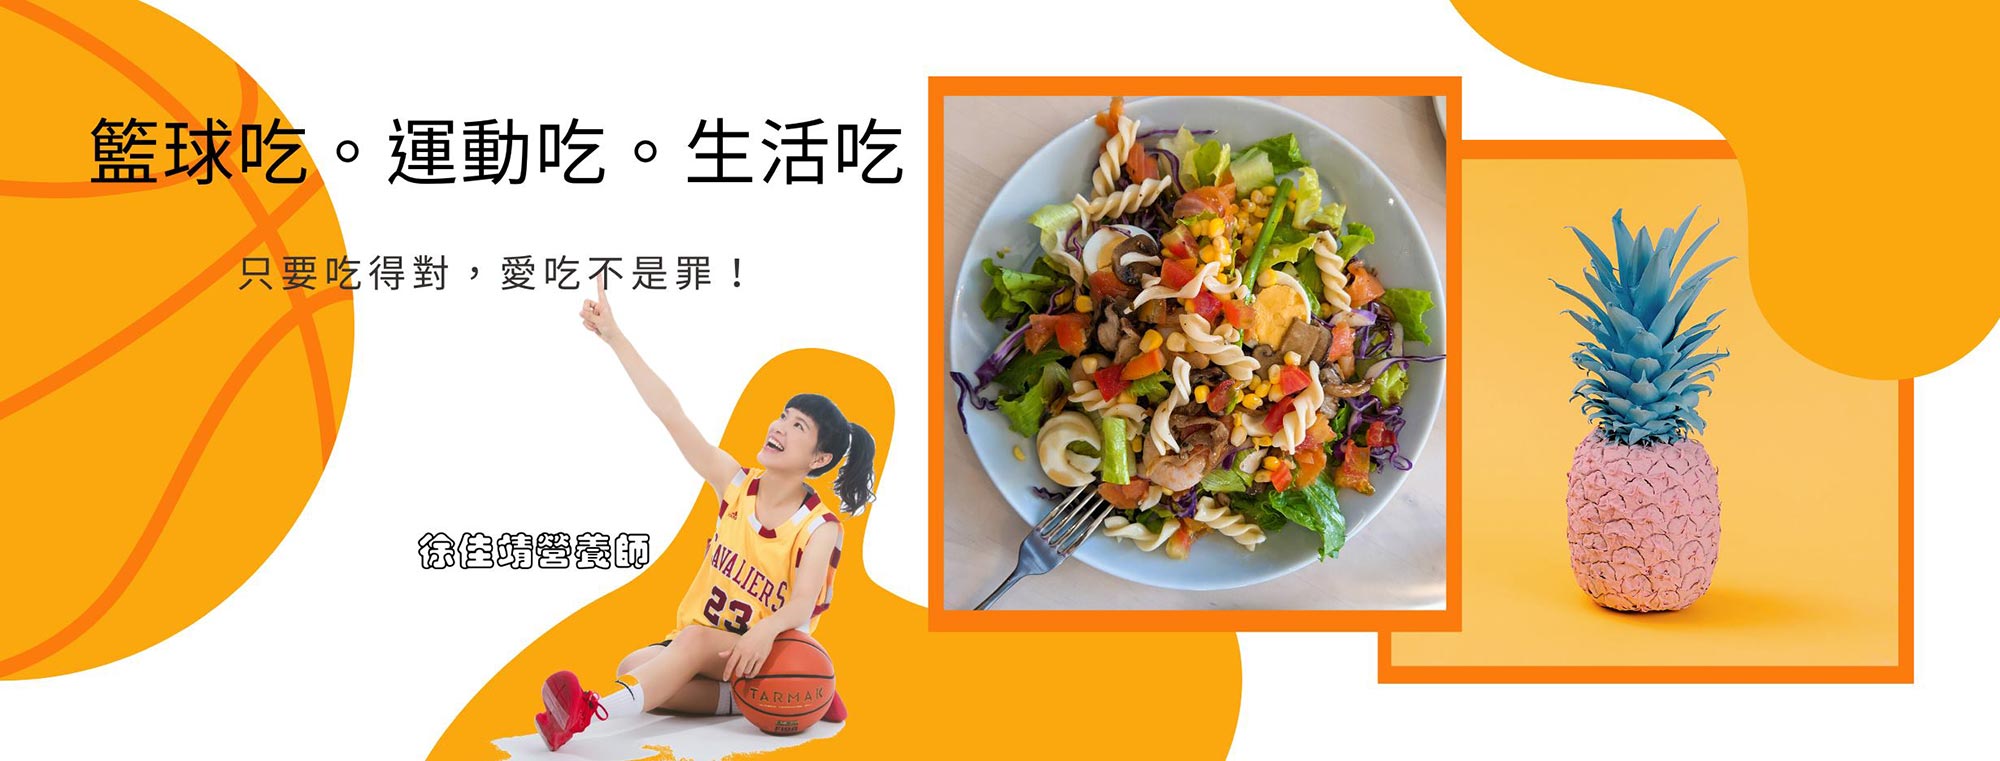 籃球吃/運動吃/生活吃